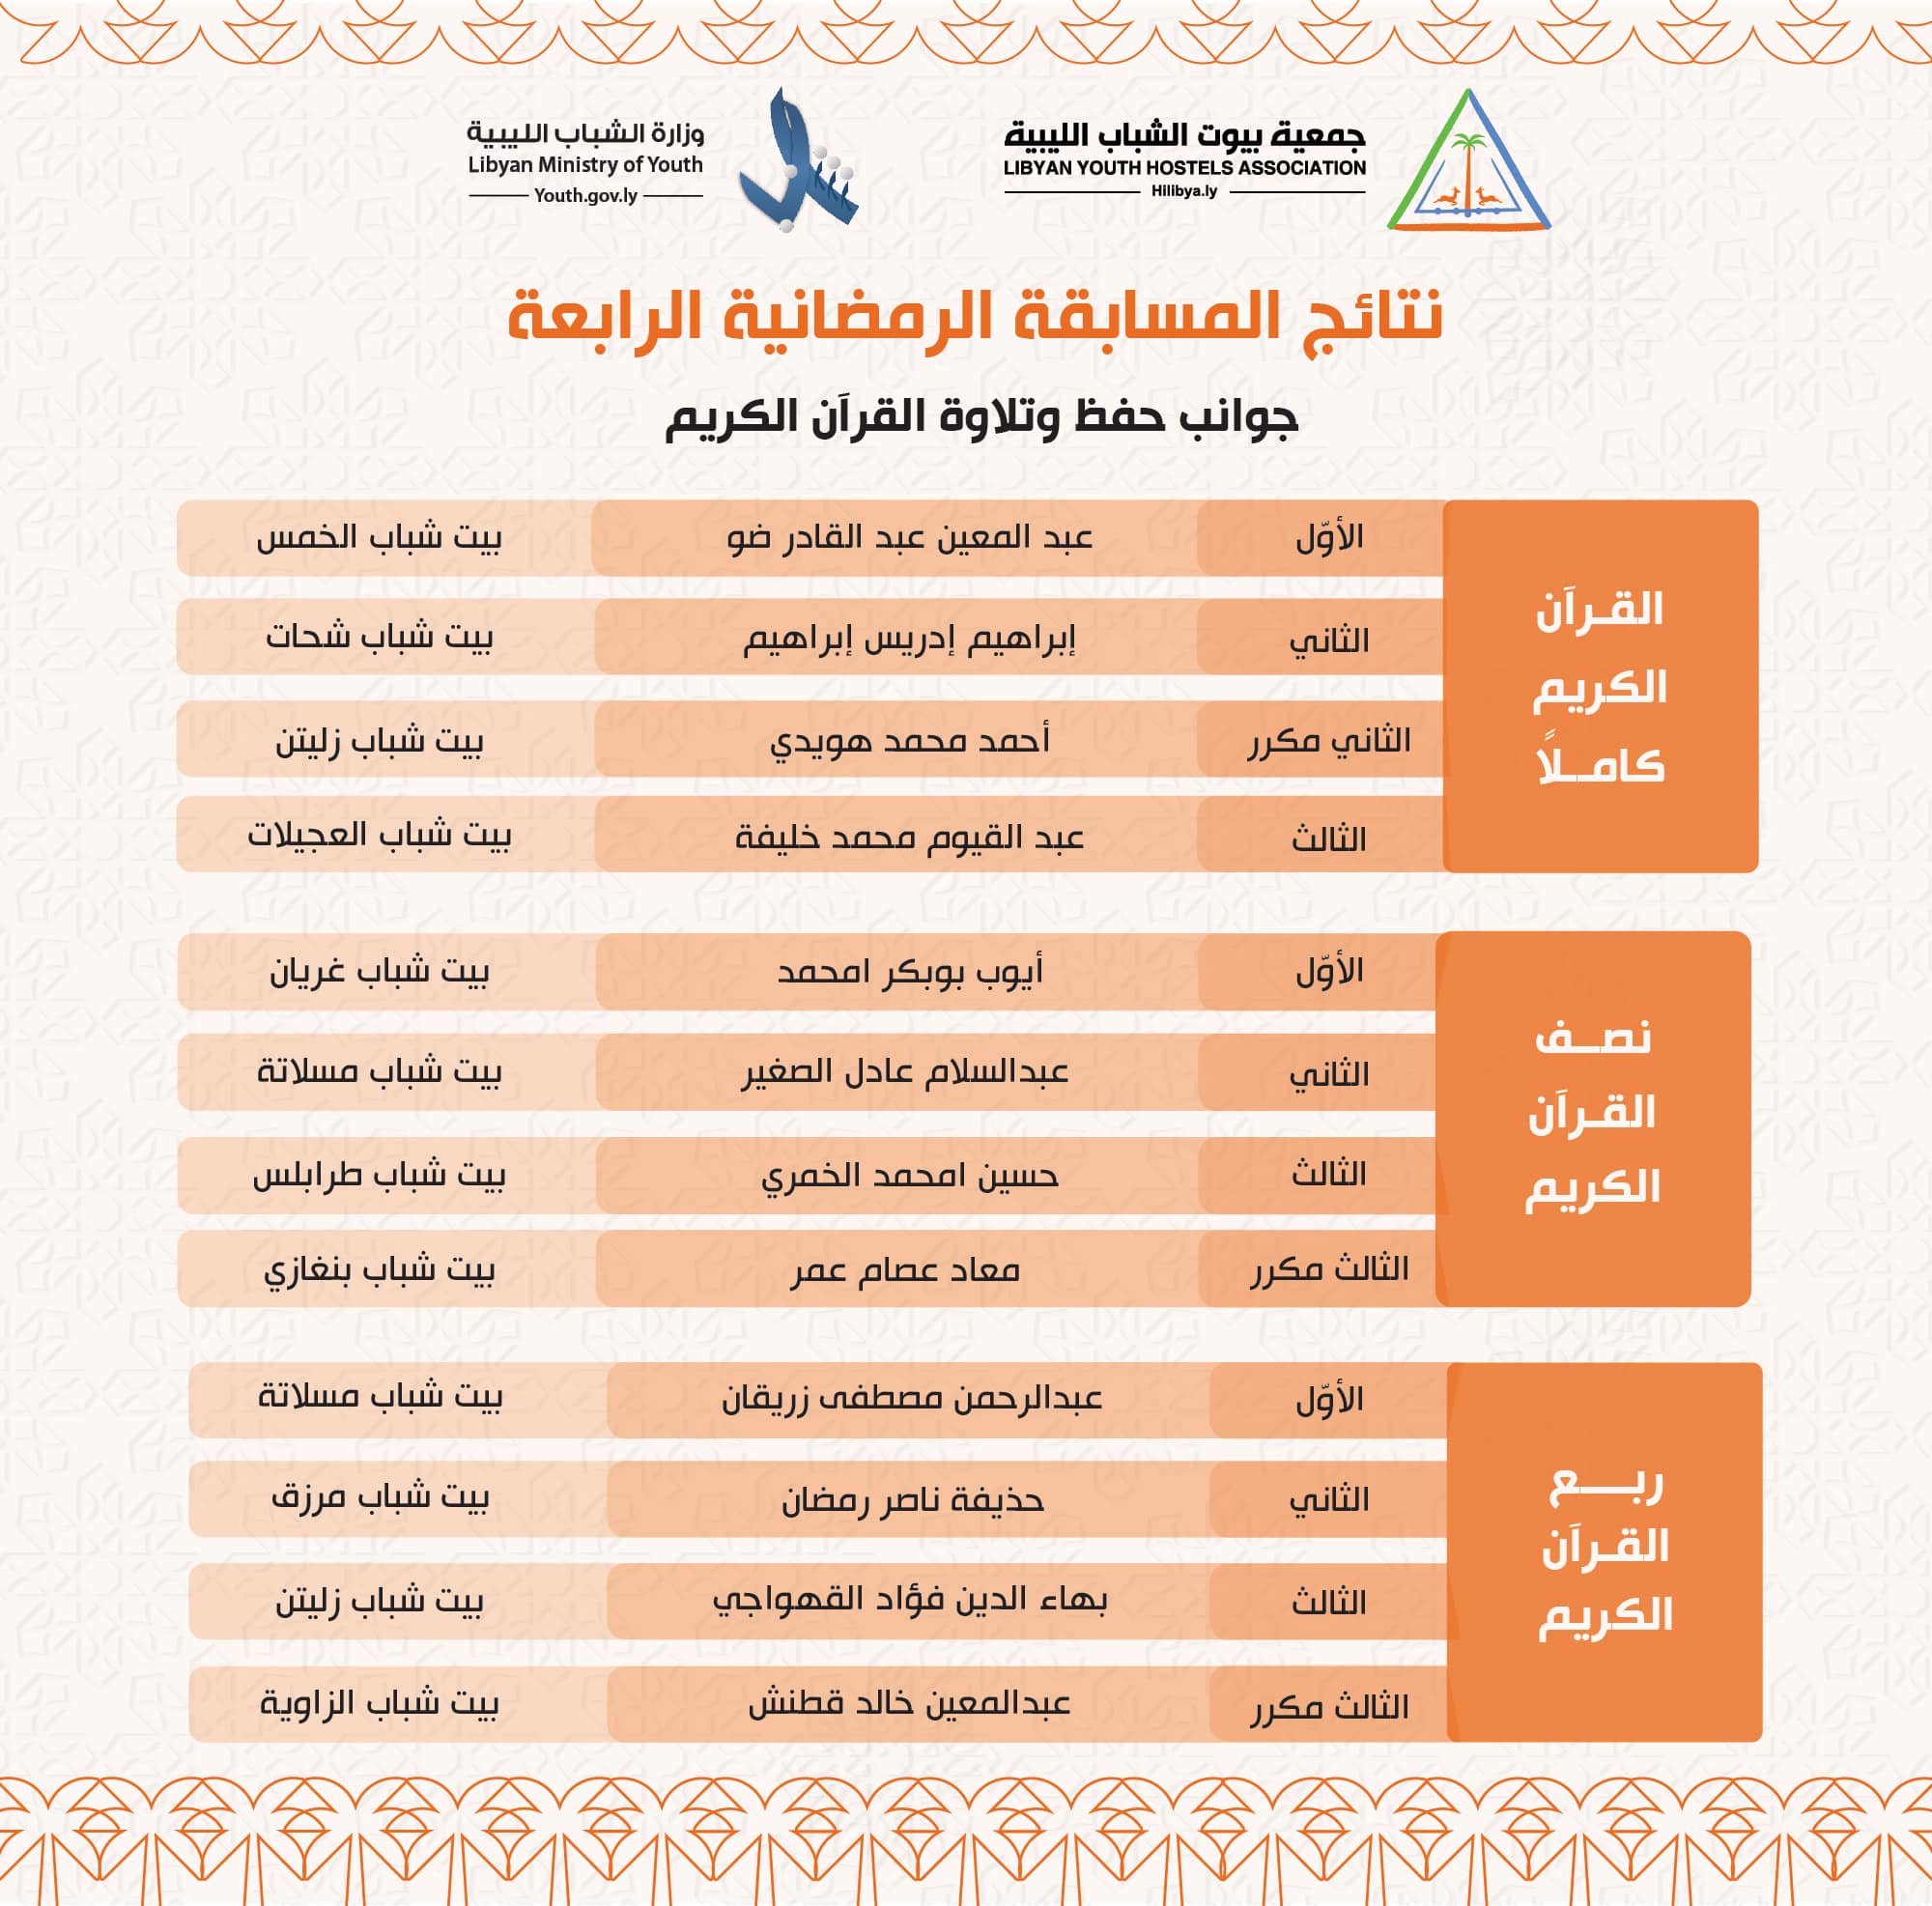 النتائج النهائية لمسابقة جمعية بيوت الشباب الليبية الرمضانيّة الرابعة بالخمس.